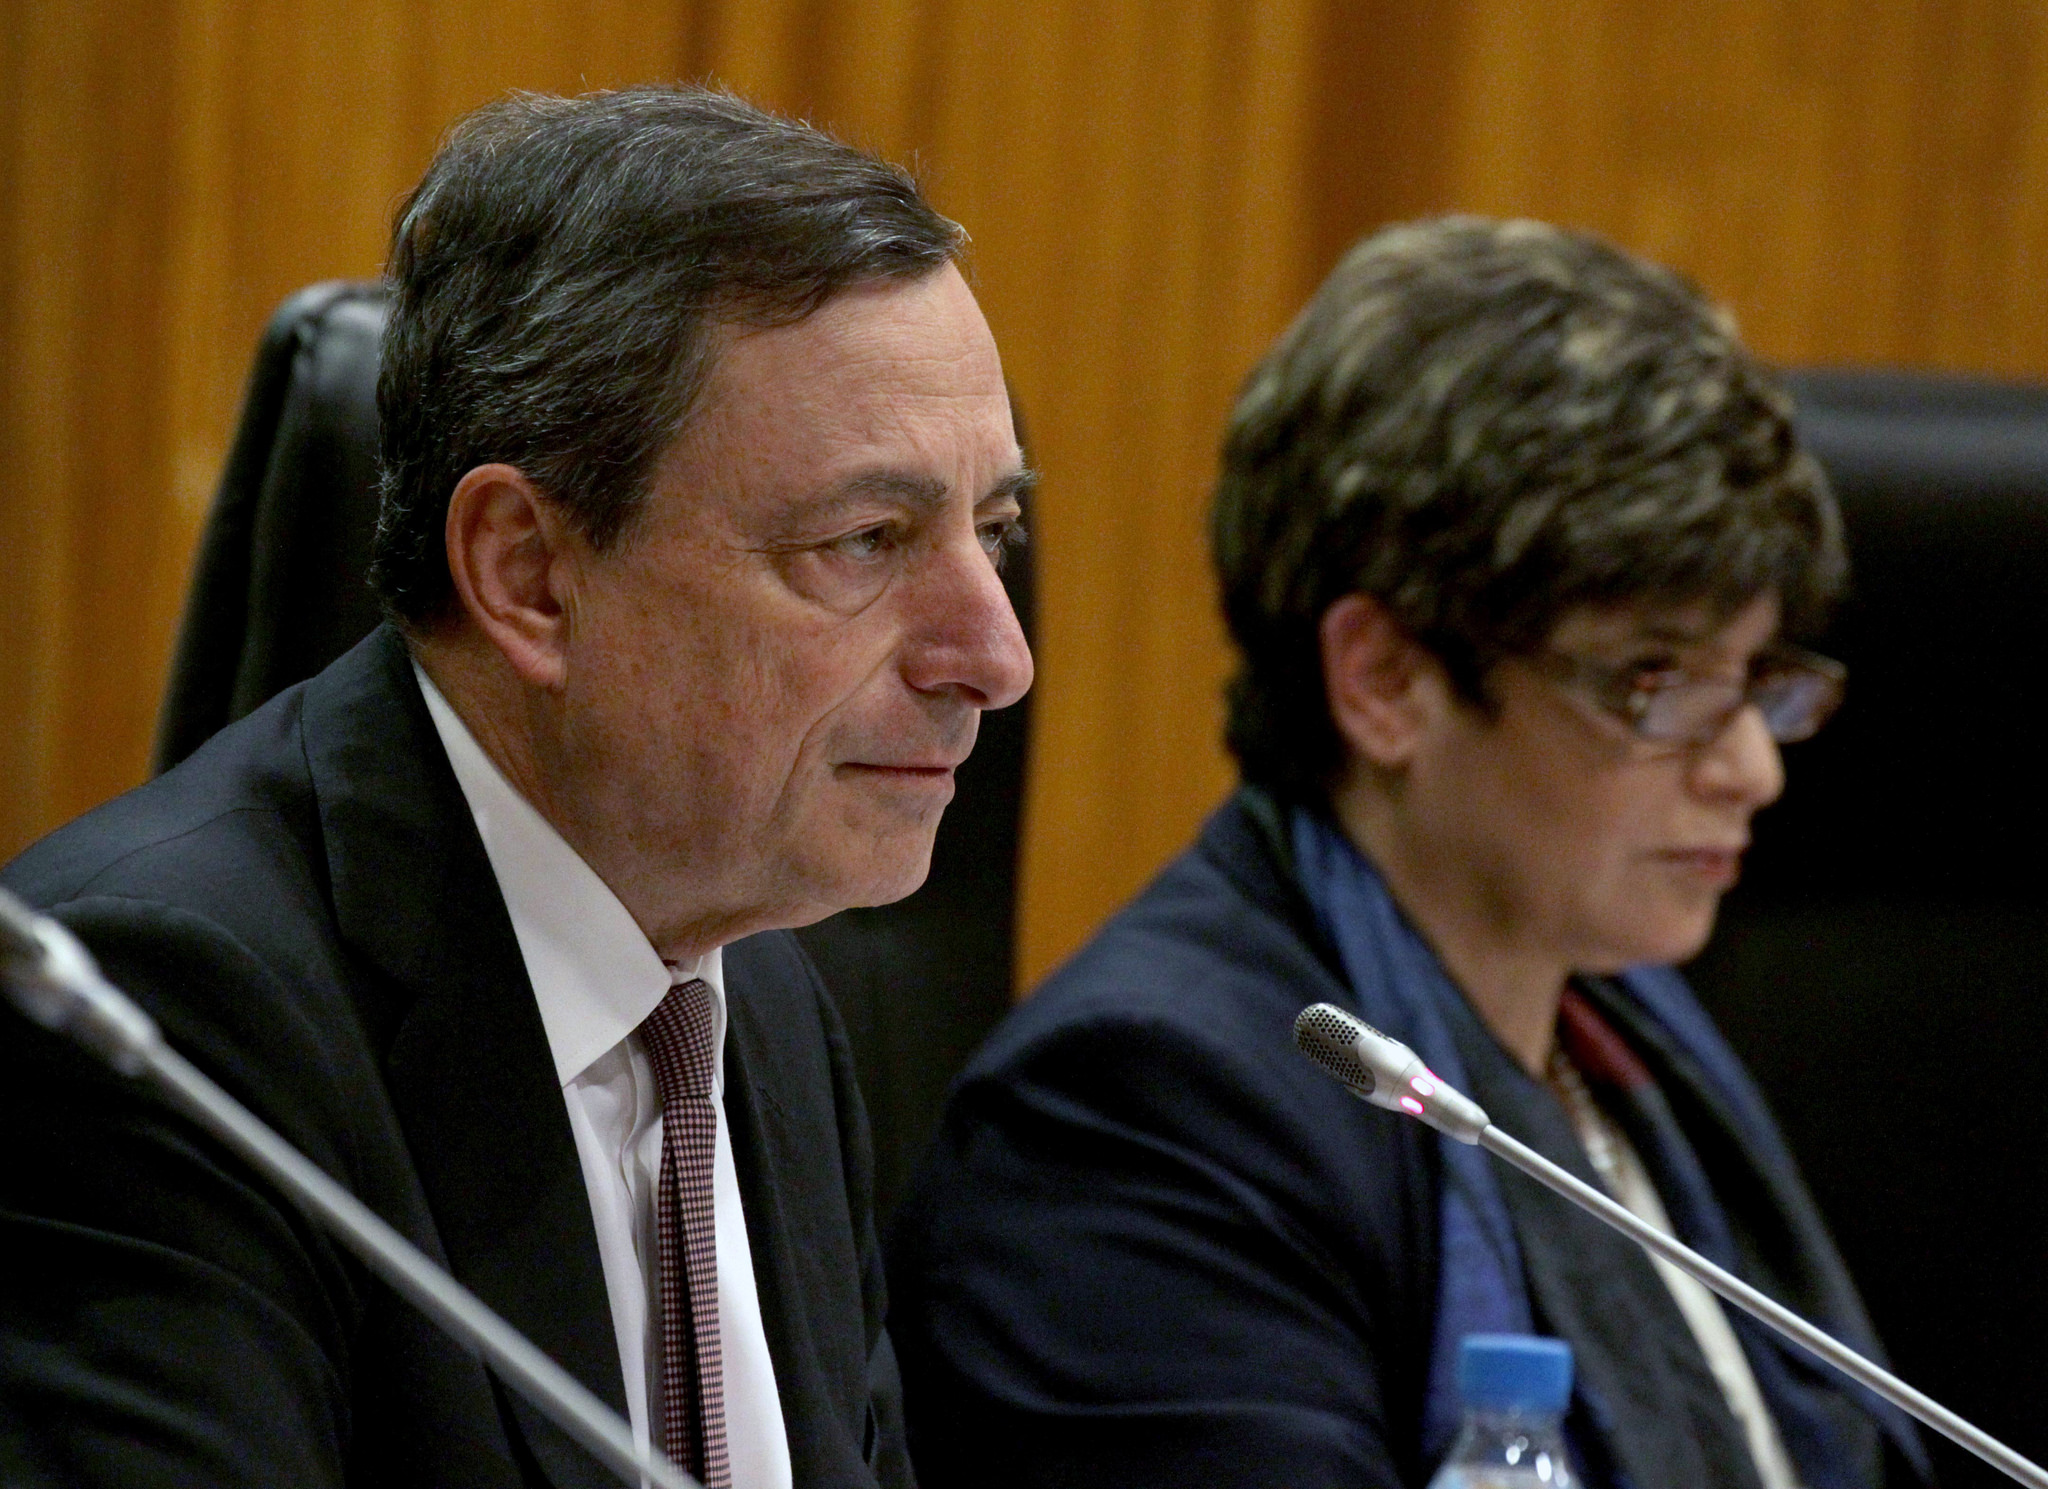 Mario Draghi ECB Press Conference